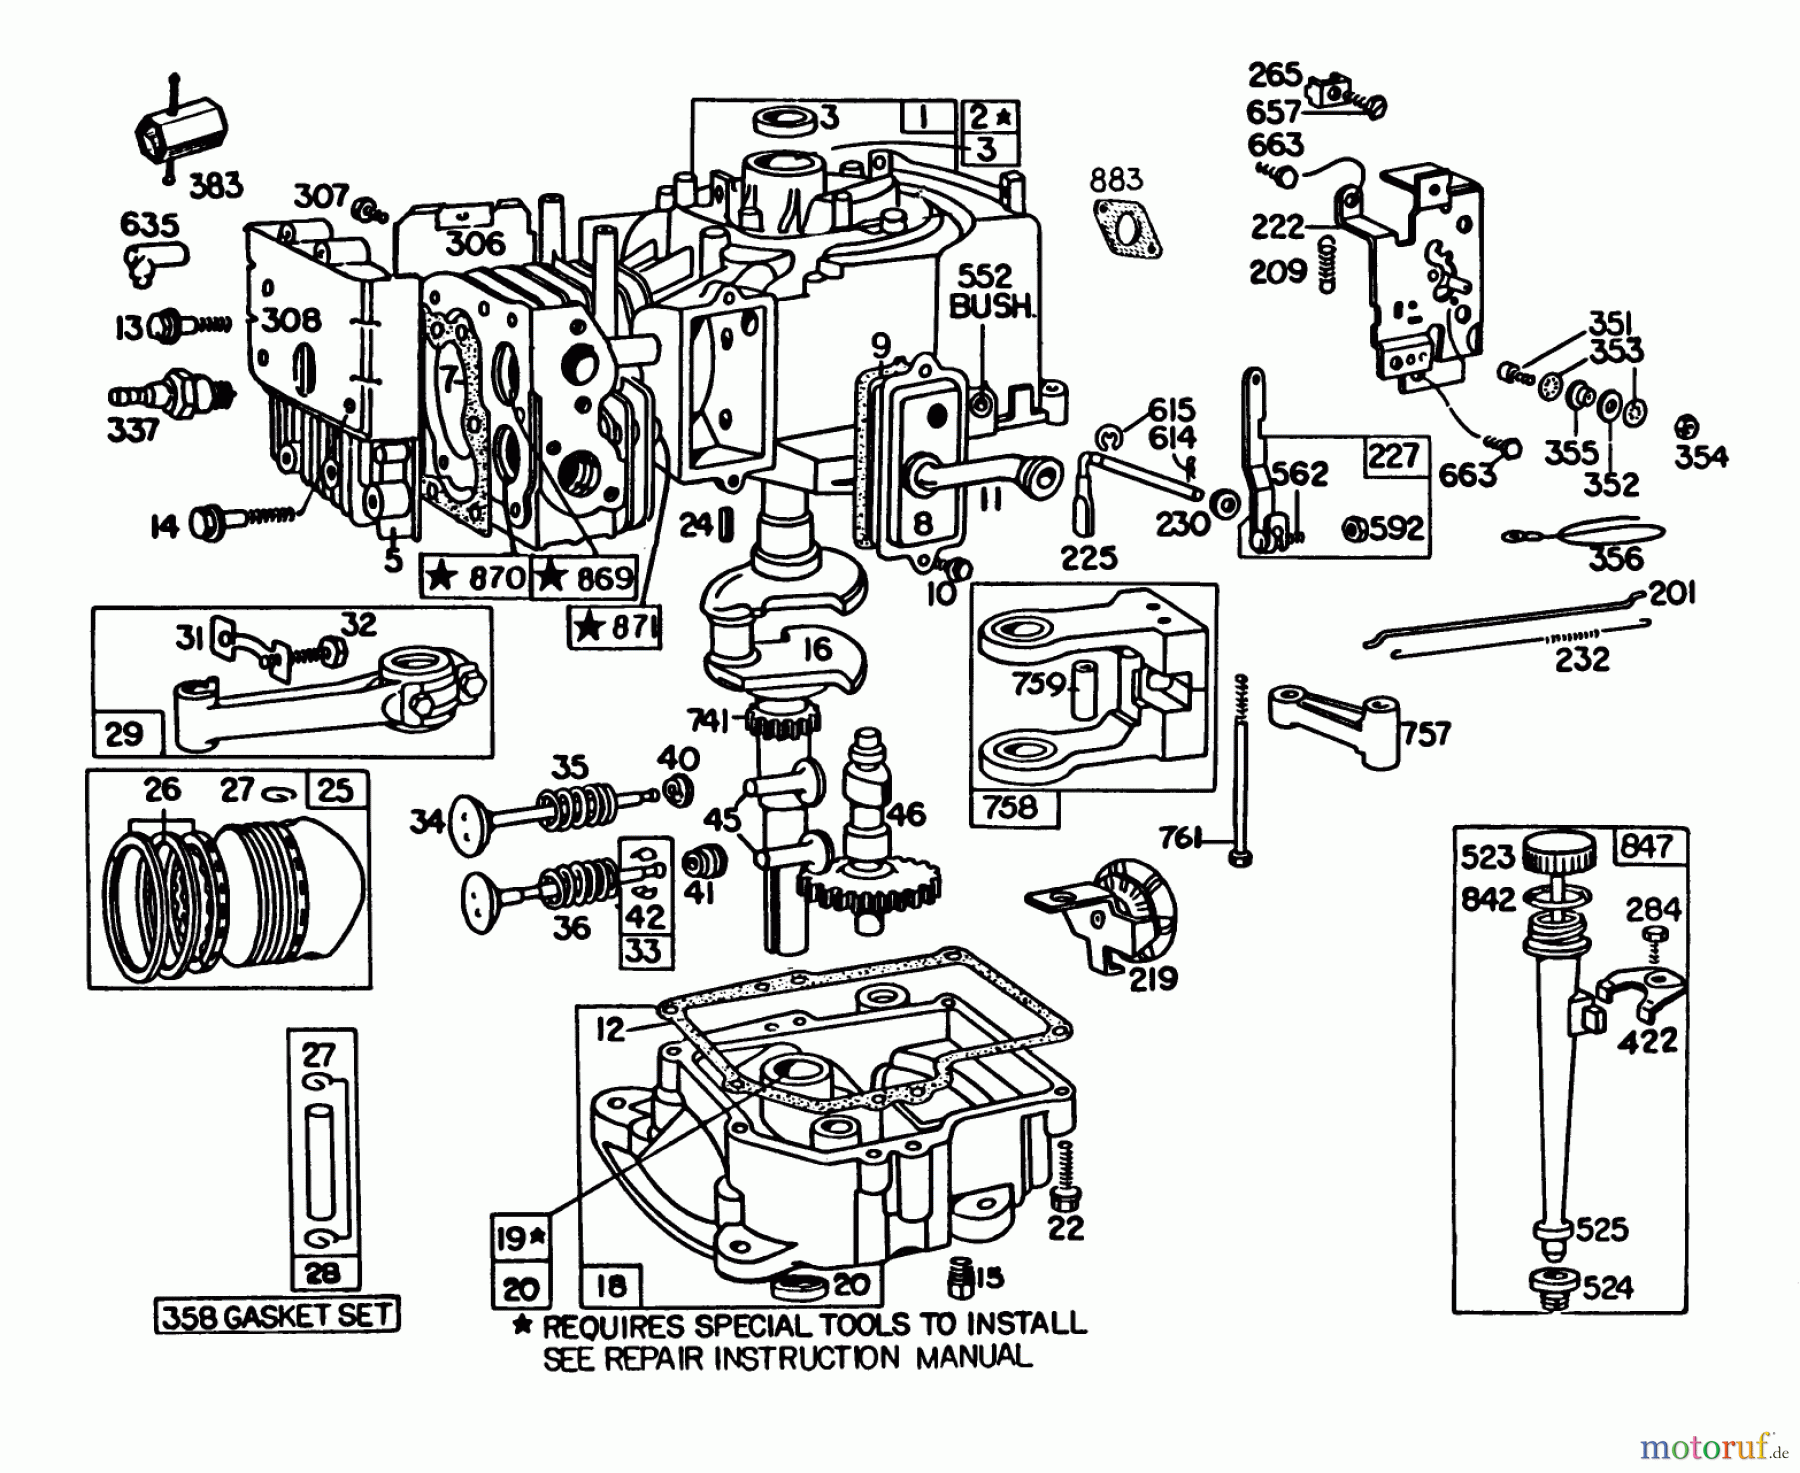  Toro Neu Mowers, Lawn & Garden Tractor Seite 1 57300 (8-32) - Toro 8-32 Front Engine Rider, 1985 (5000001-5999999) ENGINE BRIGGS & STRATTON MODEL 191707-5816-01 (MODEL 57300)